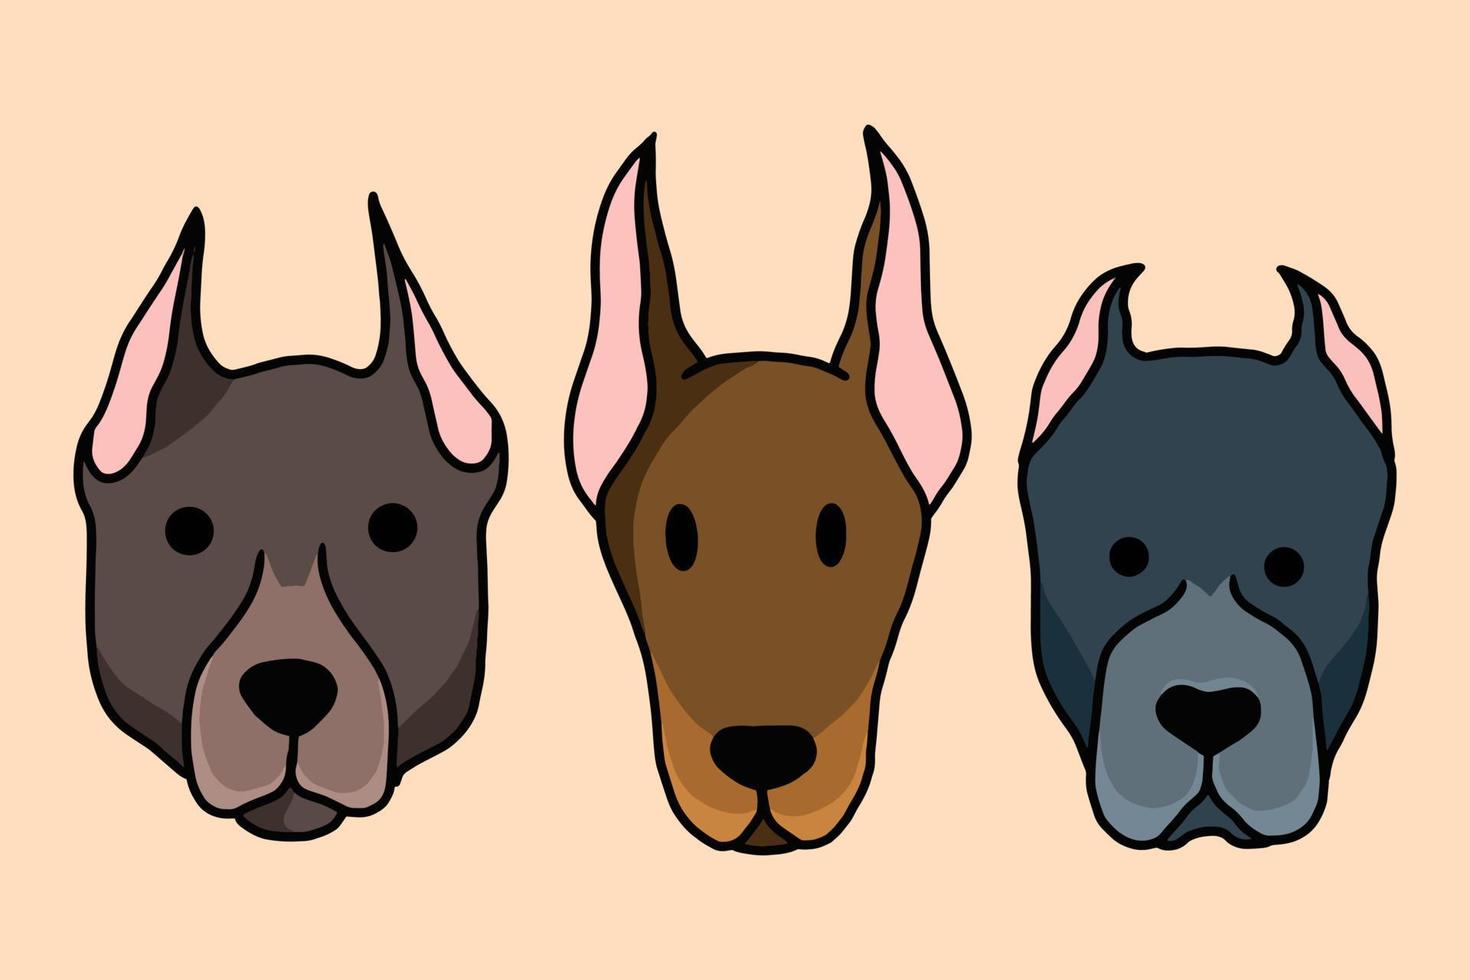 definir ilustração de desenho animado de cachorrinho fofo cachorro animal de estimação vetor